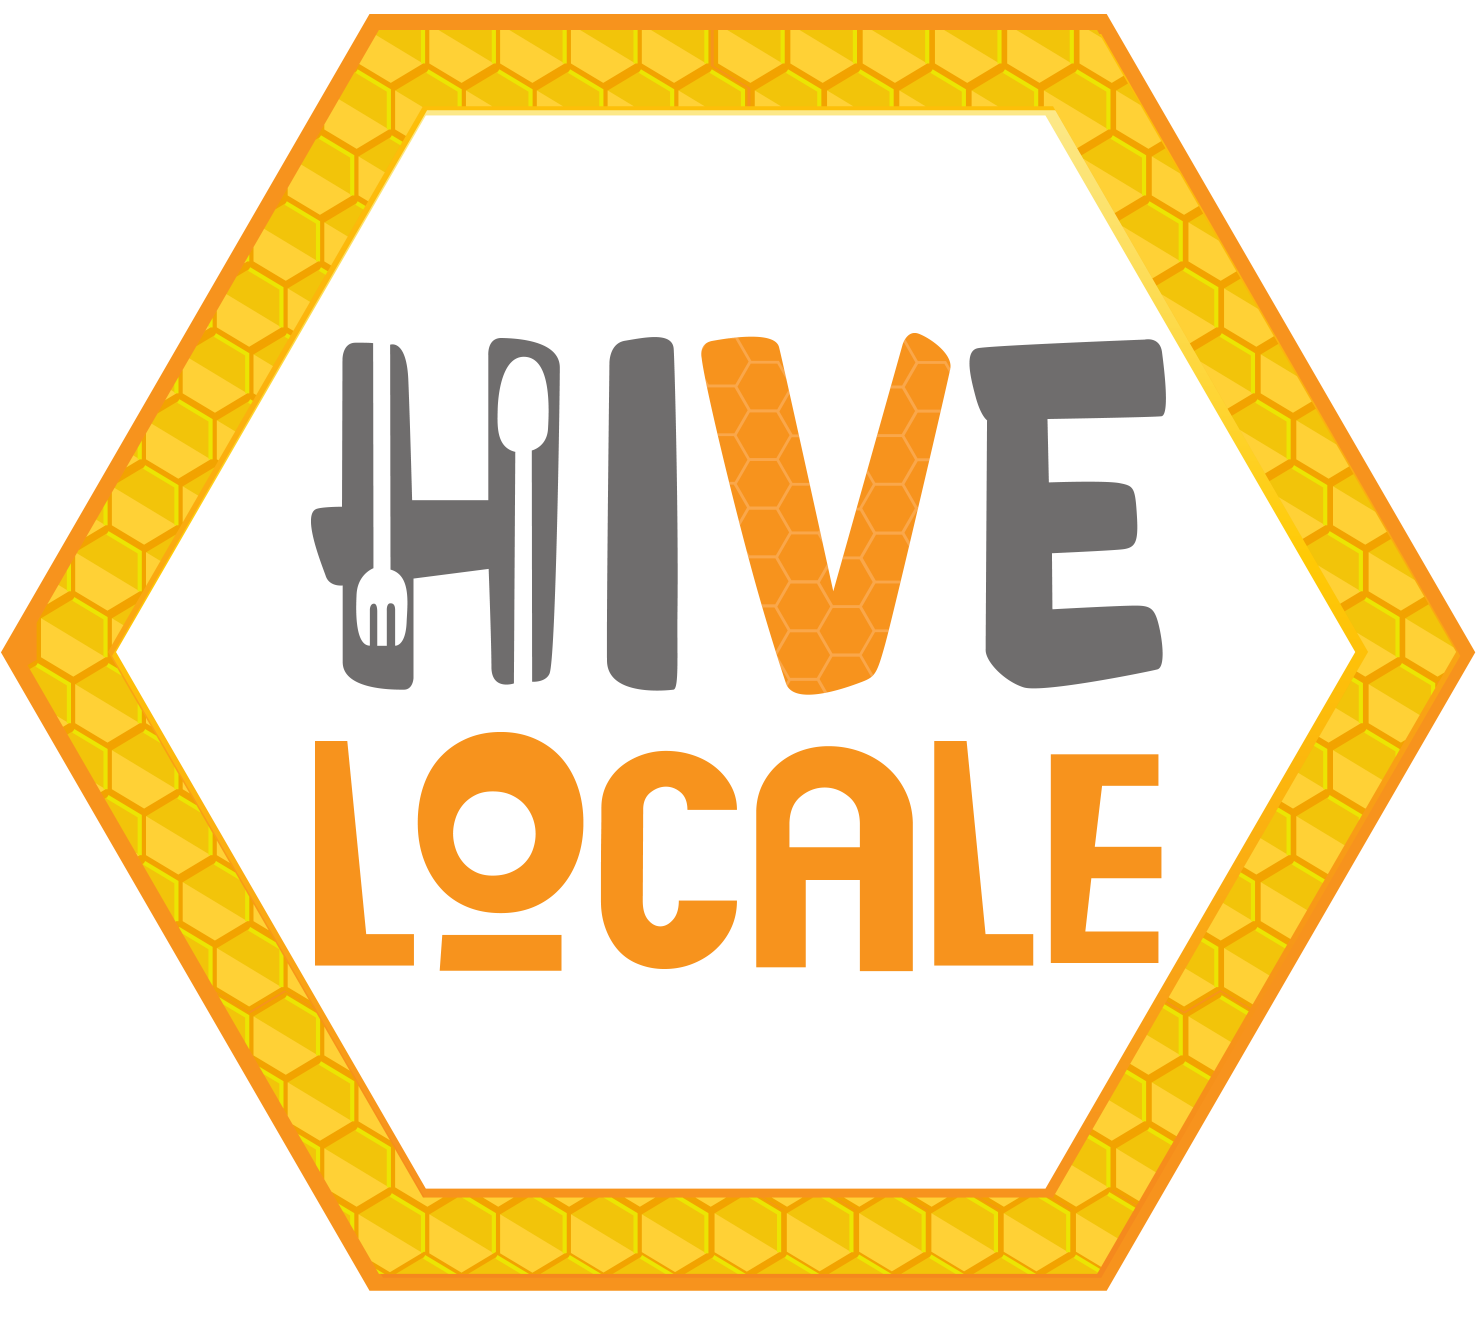 Hive Locale logo